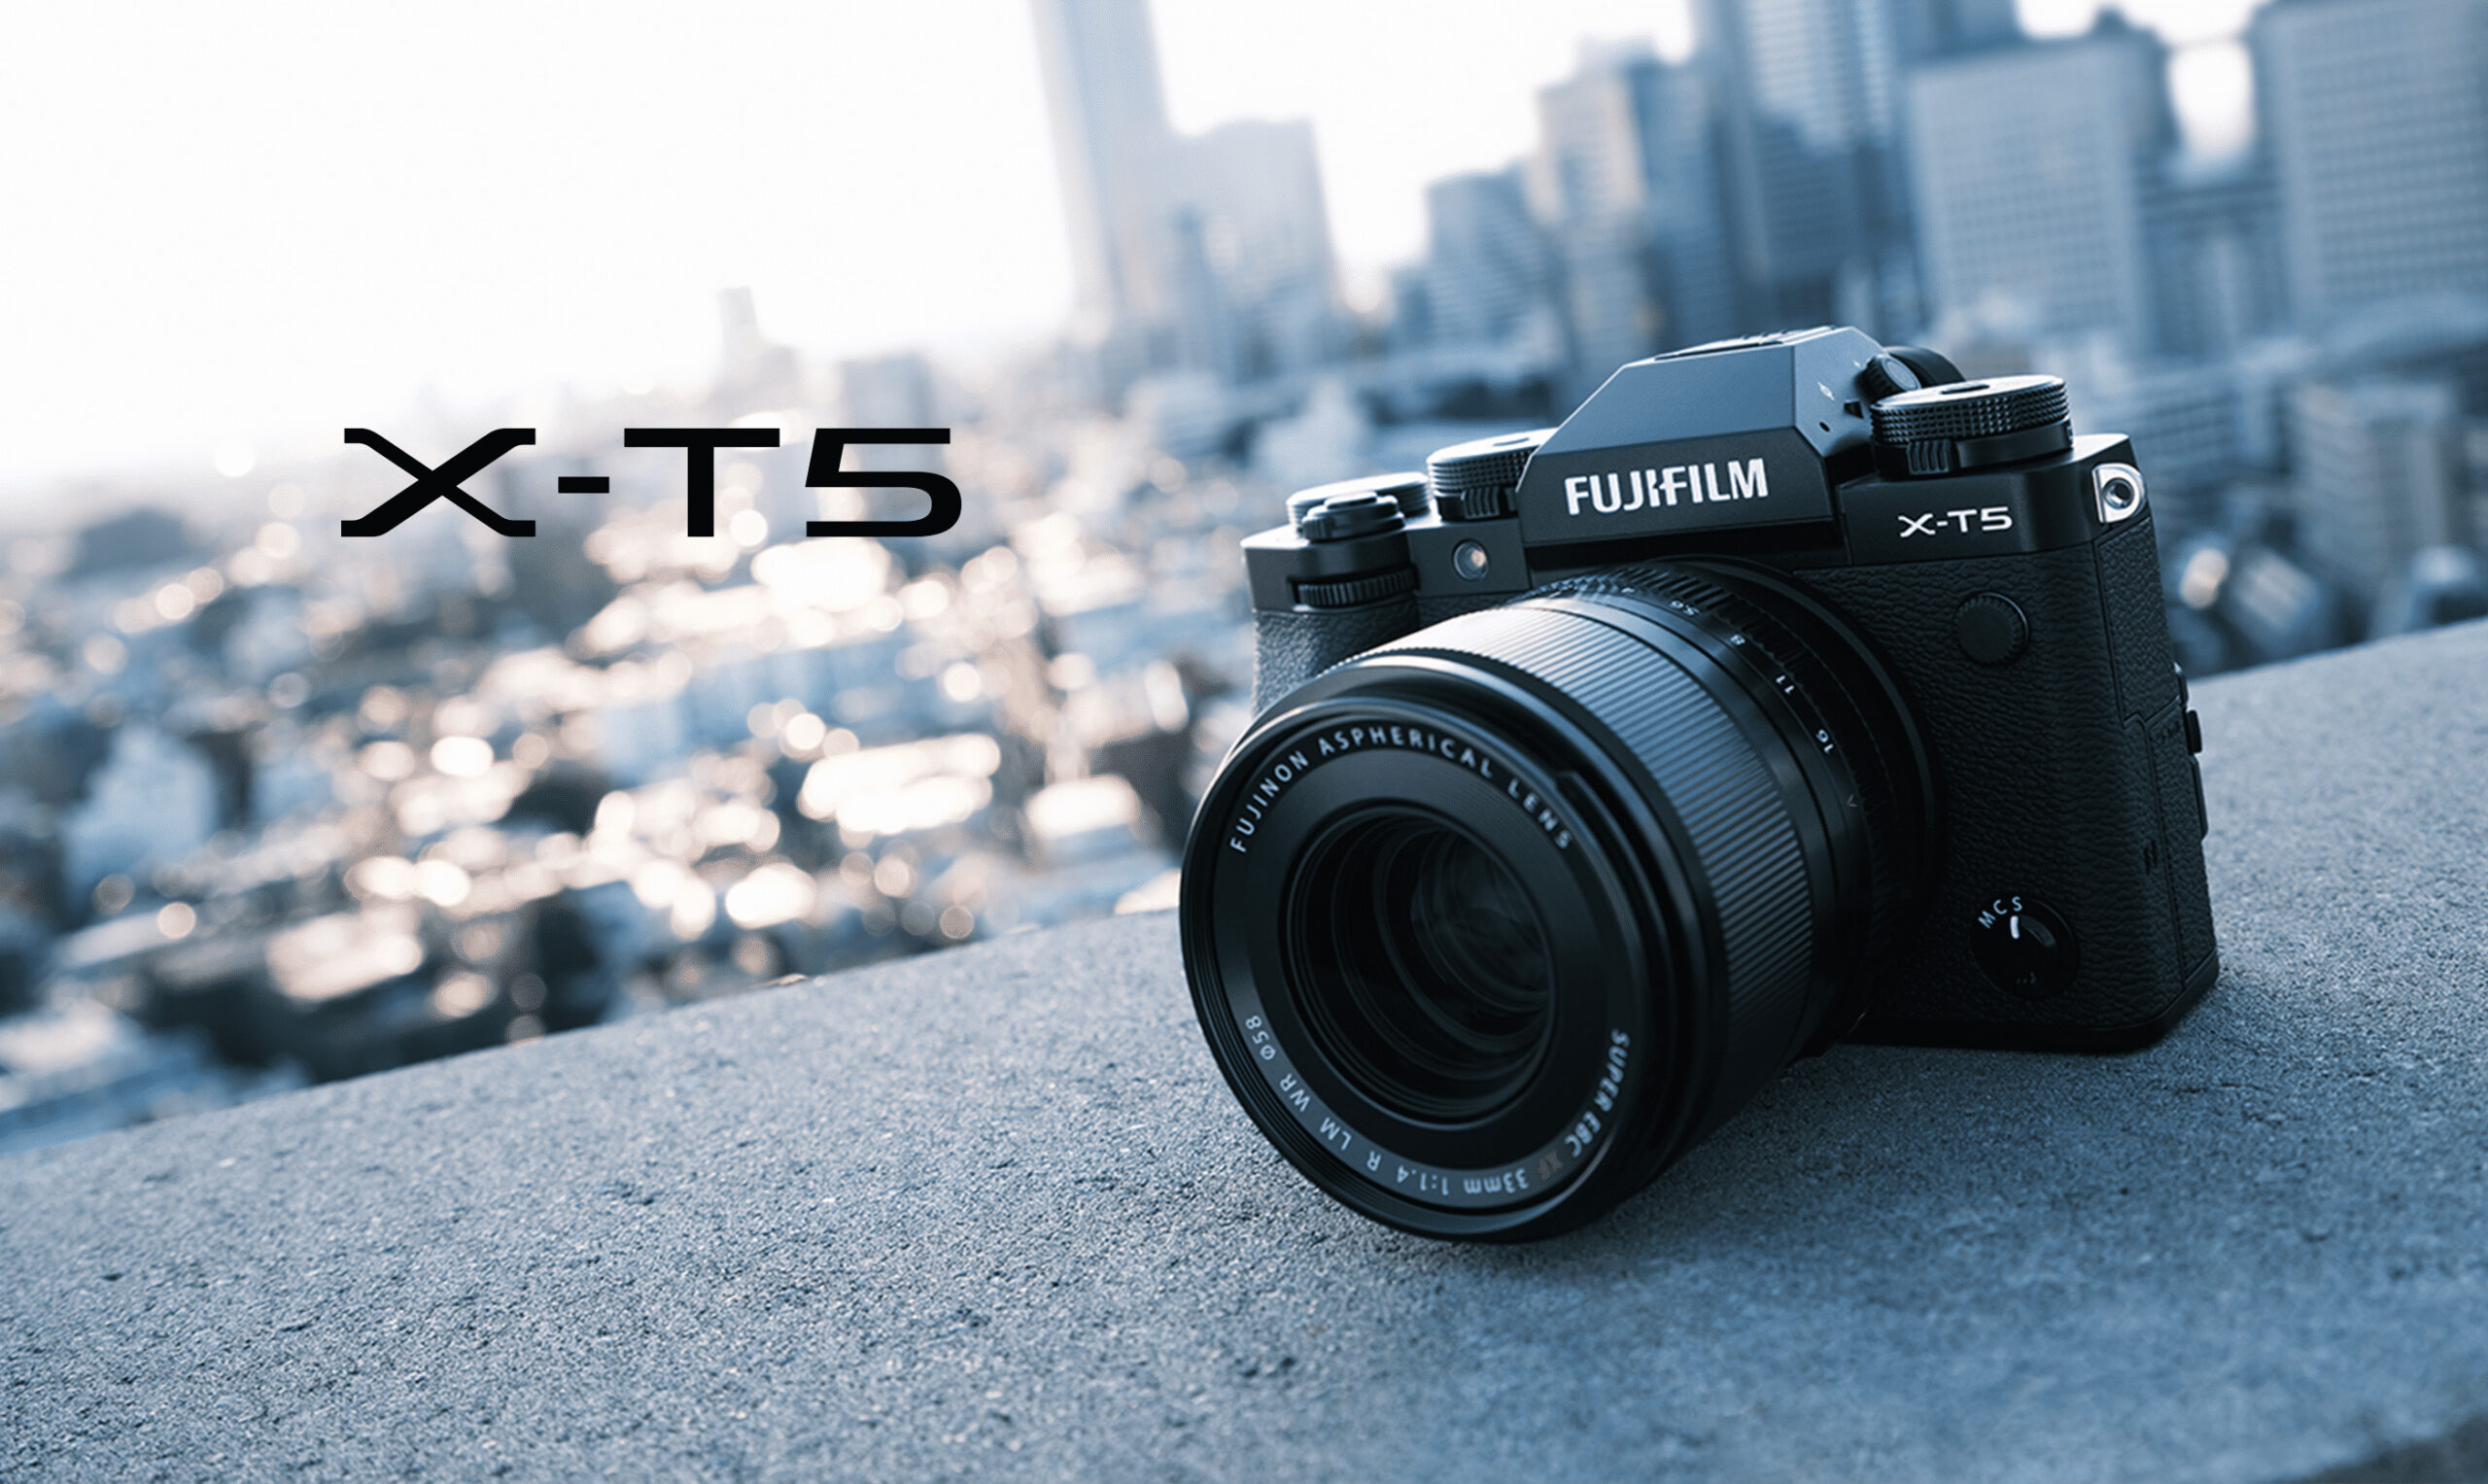 Fujifilm X-T5, la recensione completa a sei mesi dall’uscita sul mercato